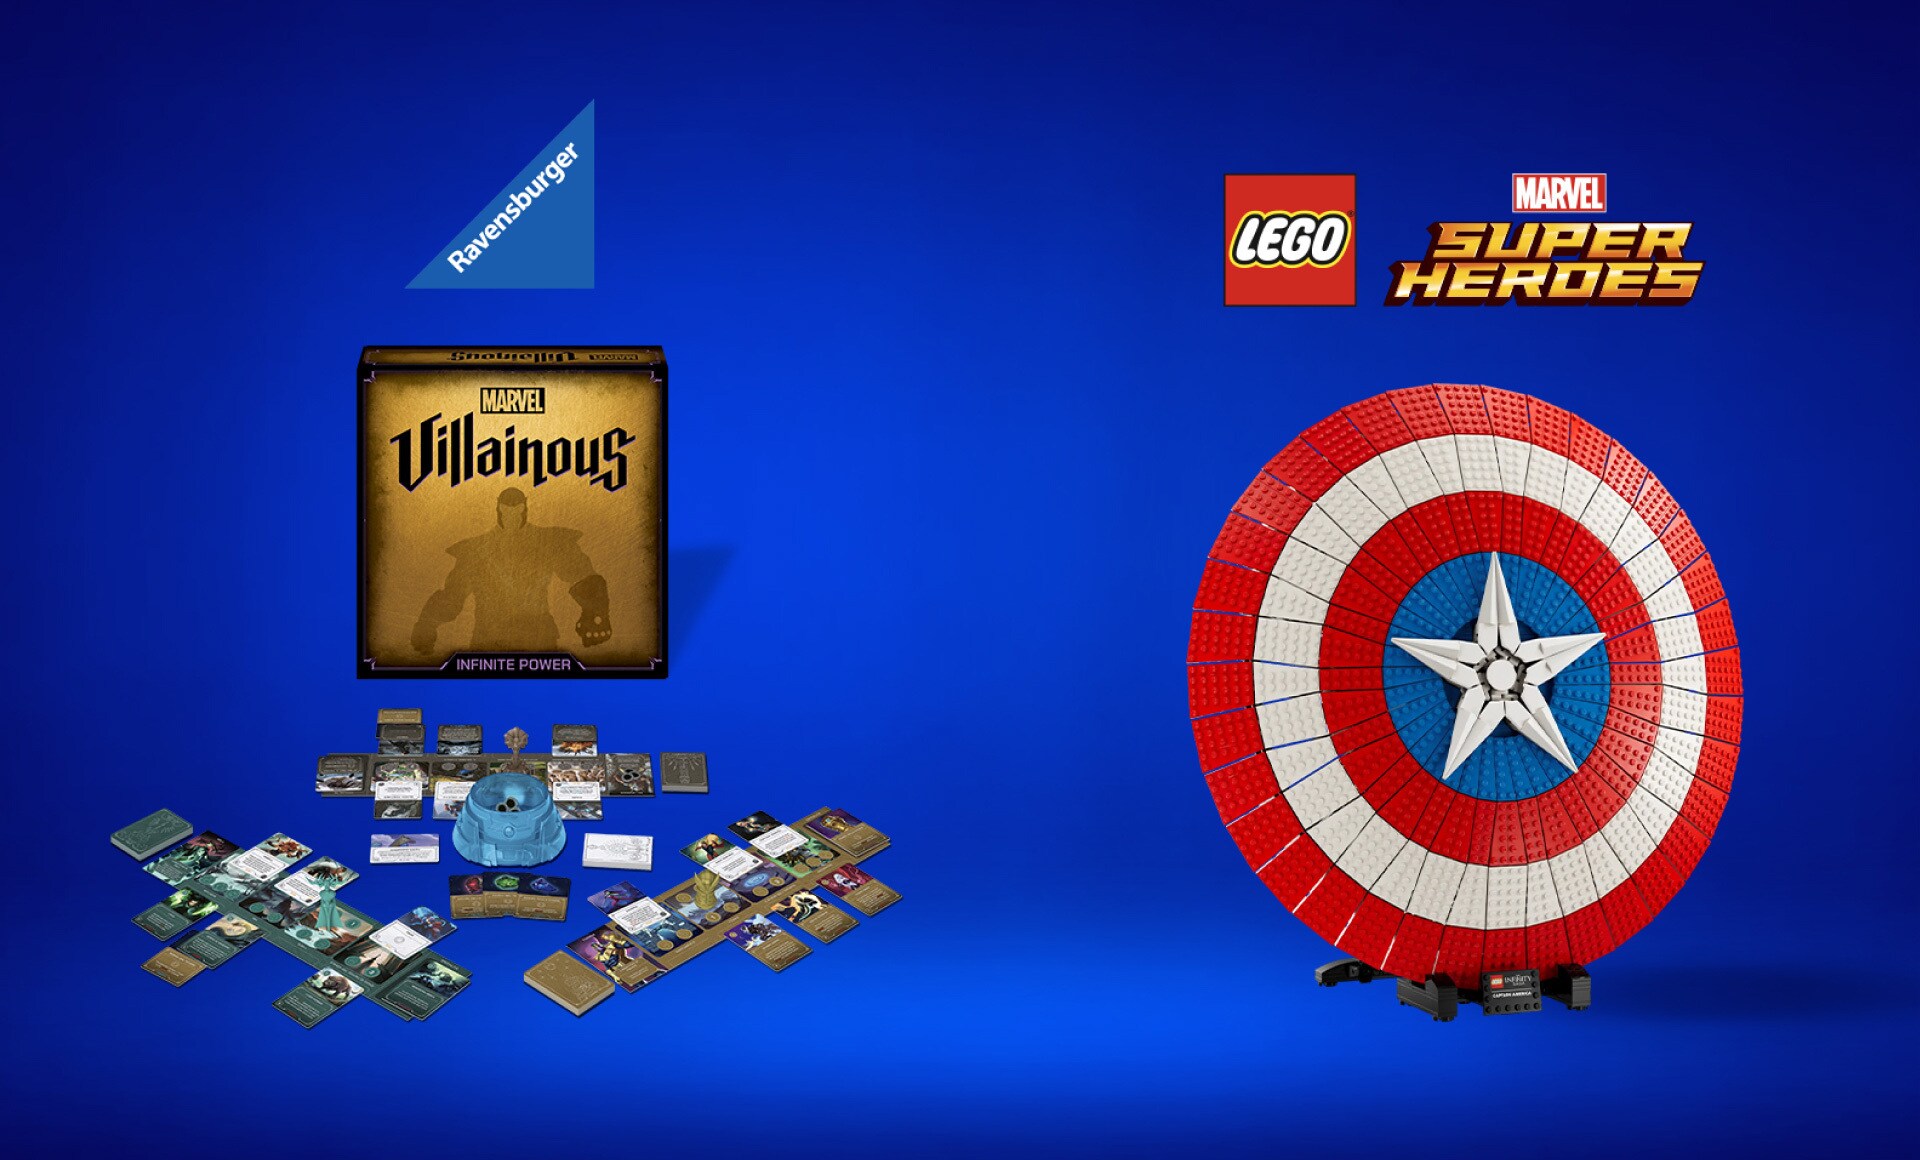 Immagine con i premi del concorso: Lego Super Heroes Marvel - Lo scudo di Captain America e Gioco in scatola Marvel Villainous - Infinite Power